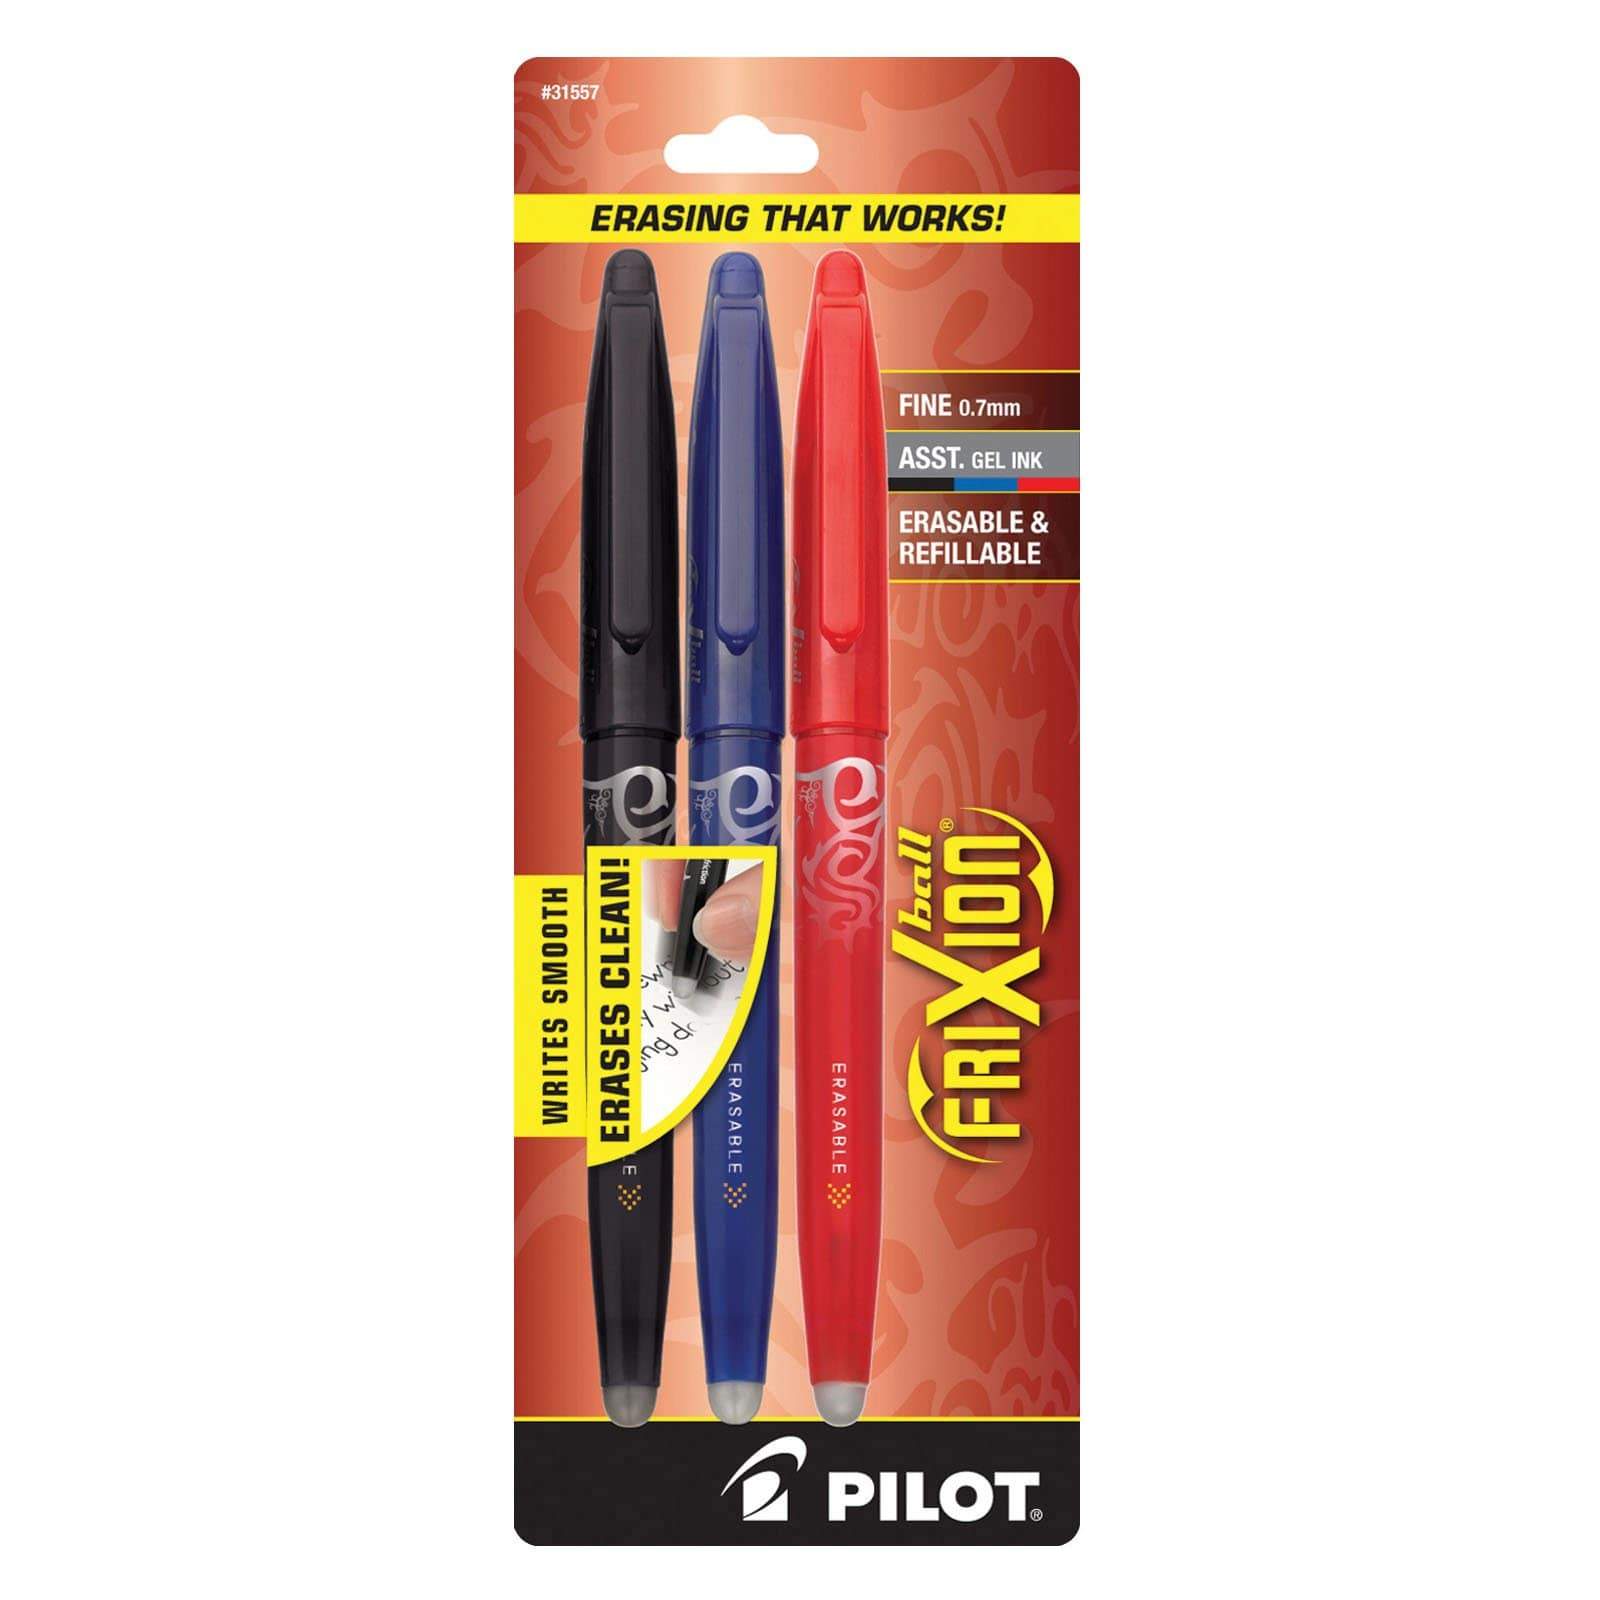 Pilot FriXion Pen - 3 Pack - Rocketbook UK